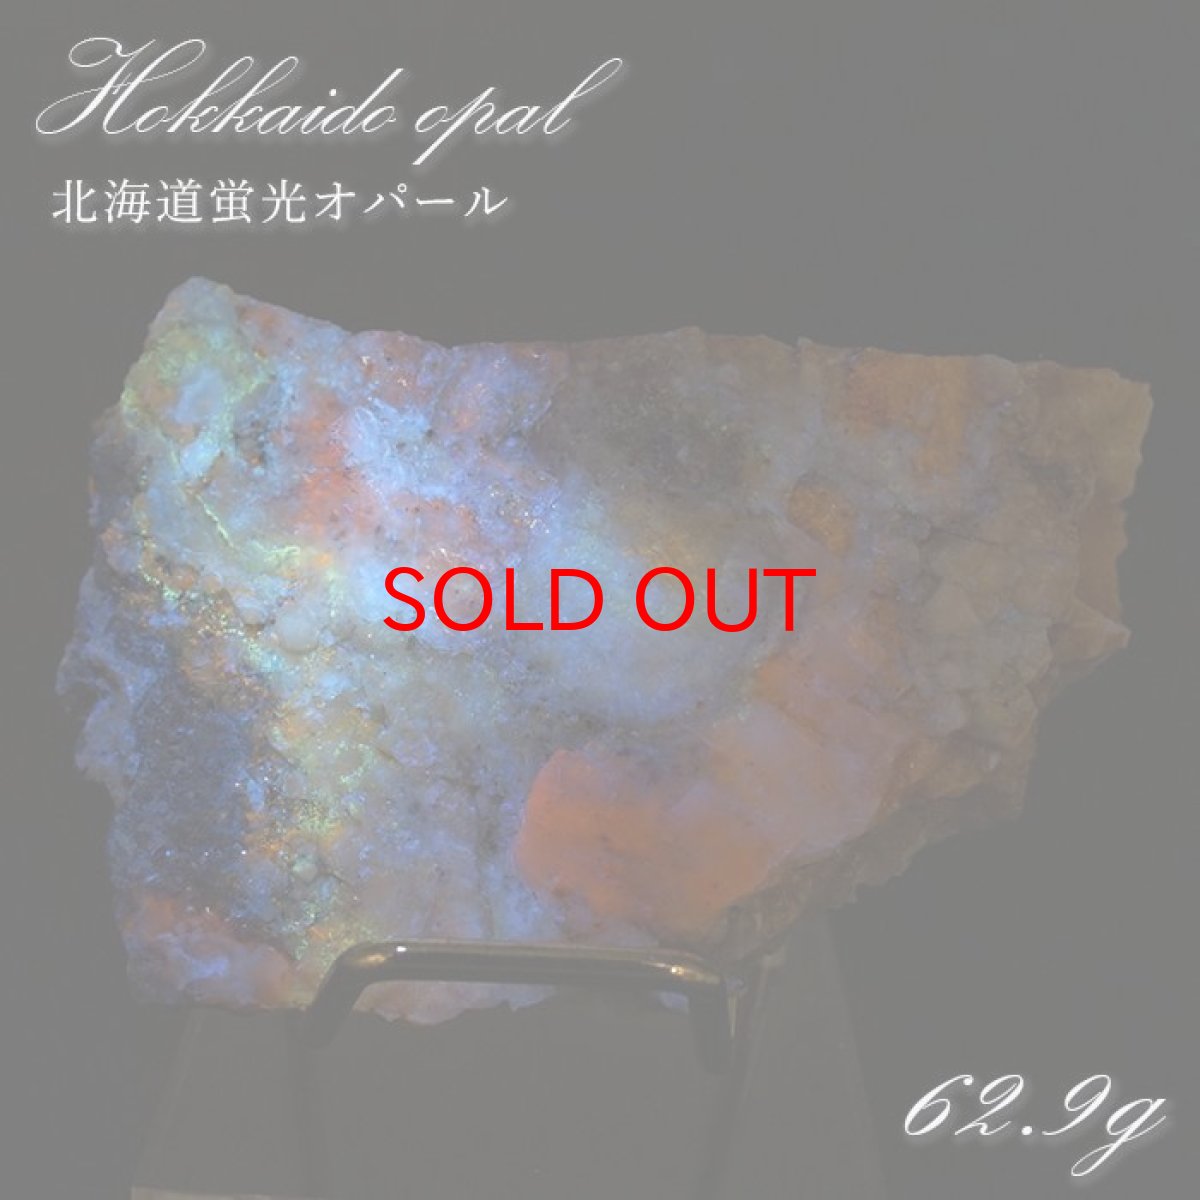 画像1: 北海道蛍光オパール 原石 約62.9g 北海道産 一点もの 天然石 パワーストーン カラーストーン (1)